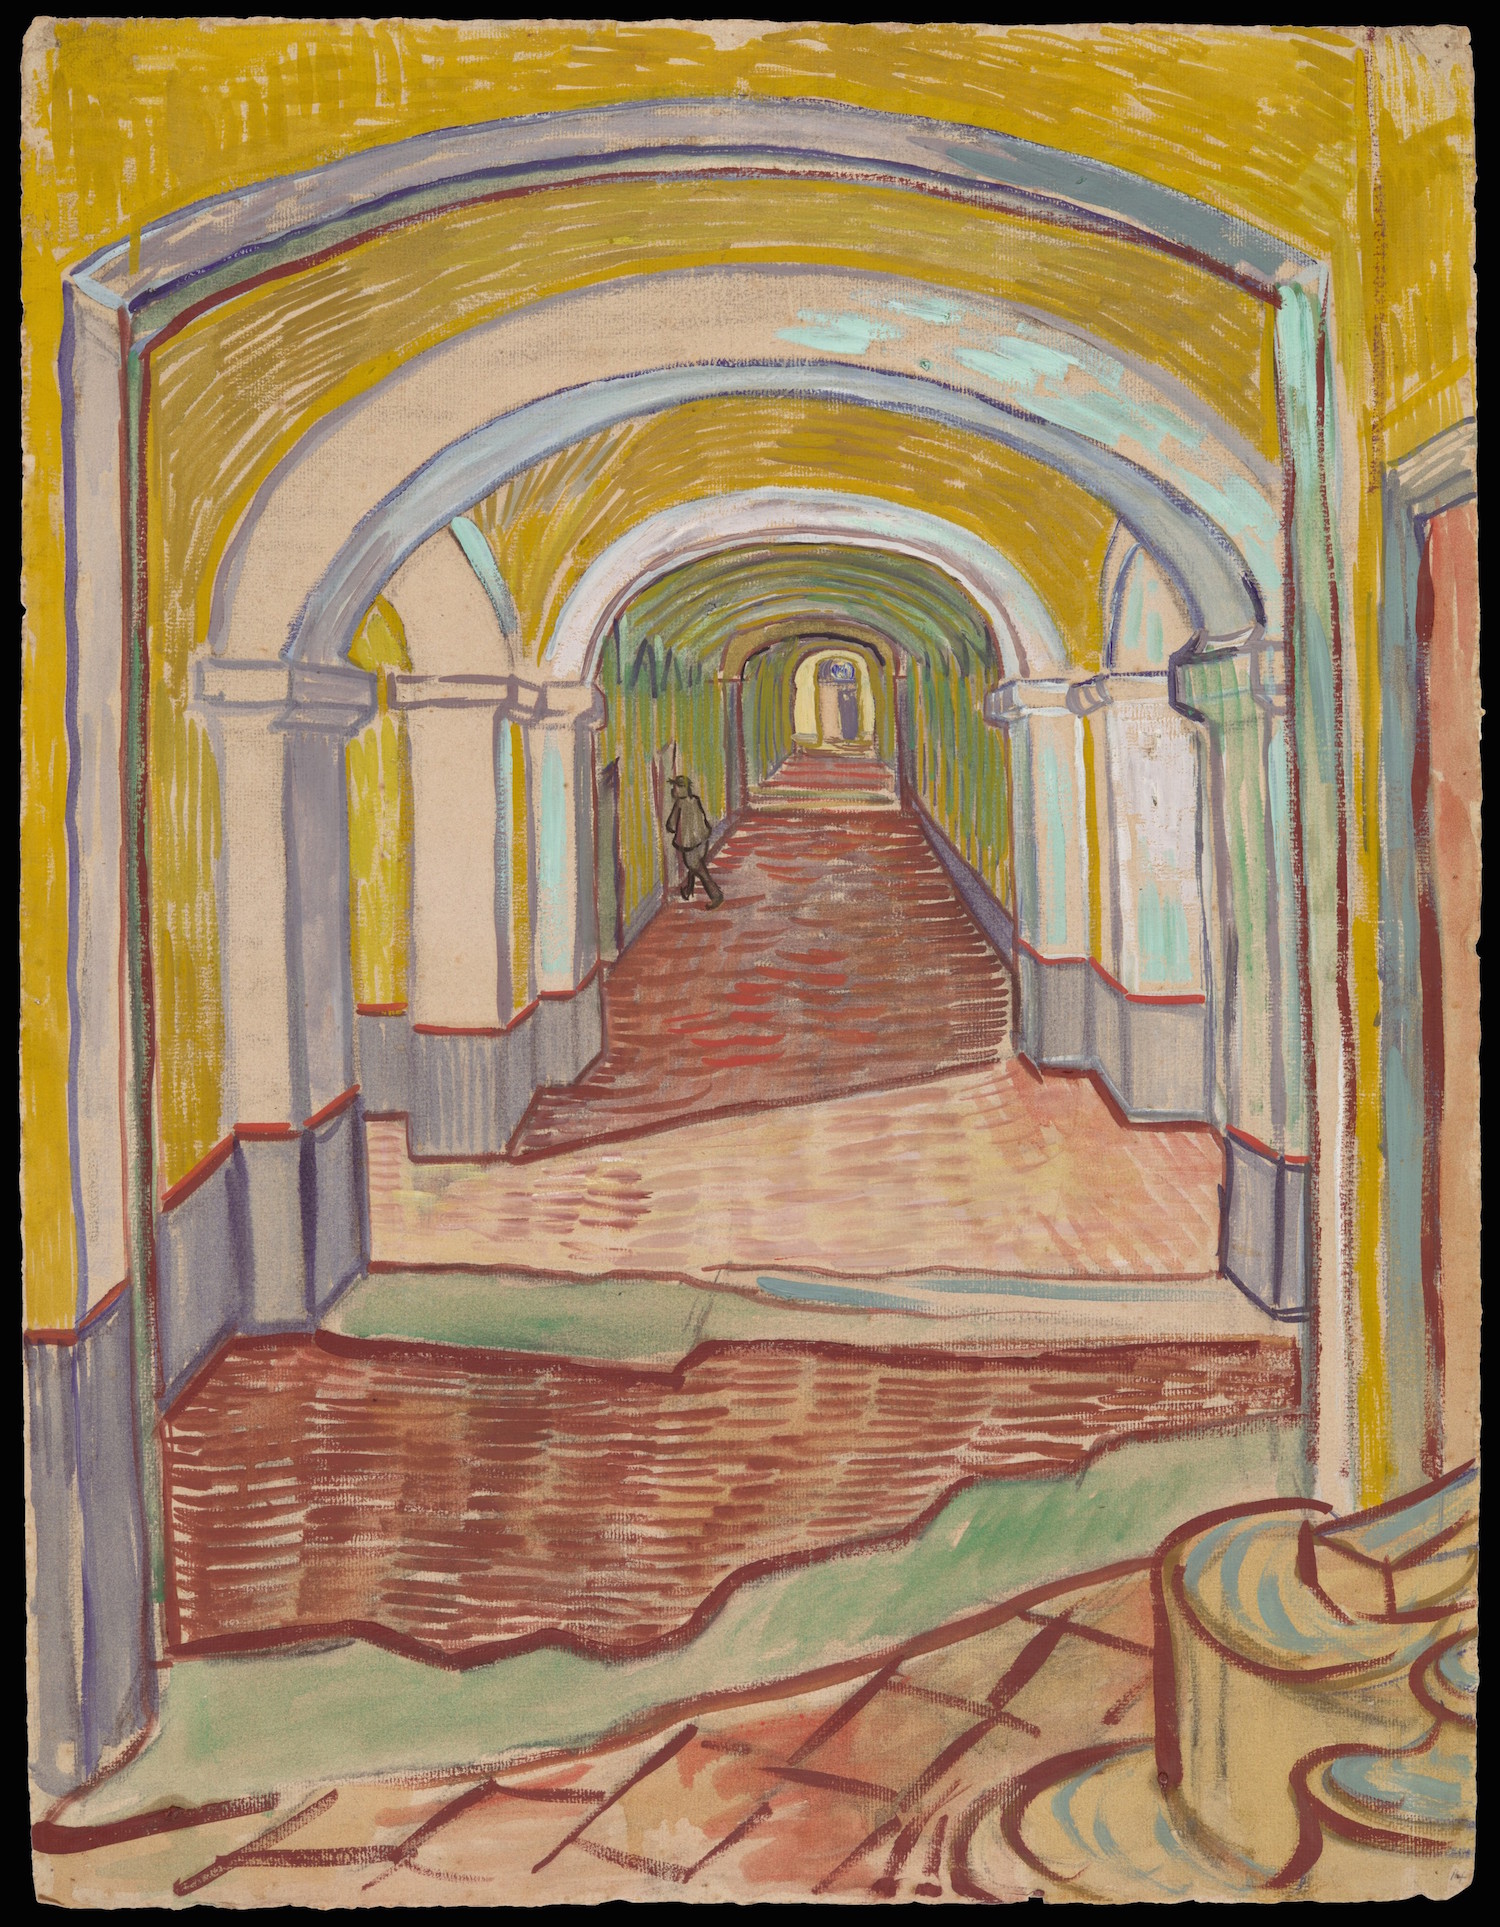 Chodba v nemocnici Sv. Pavla Saint Rémy by Vincent van Gogh - 1889 - 65.1 x 49.1 cm 